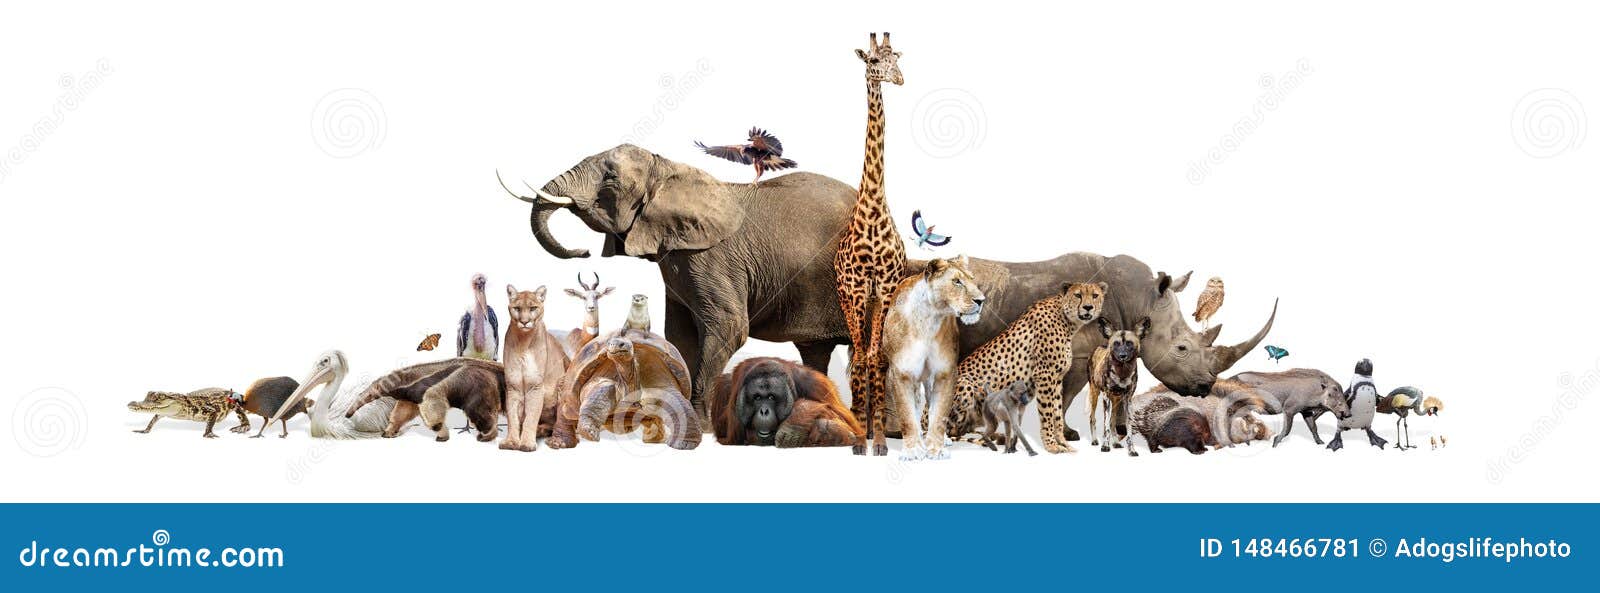 wild zoo animals on white web banner